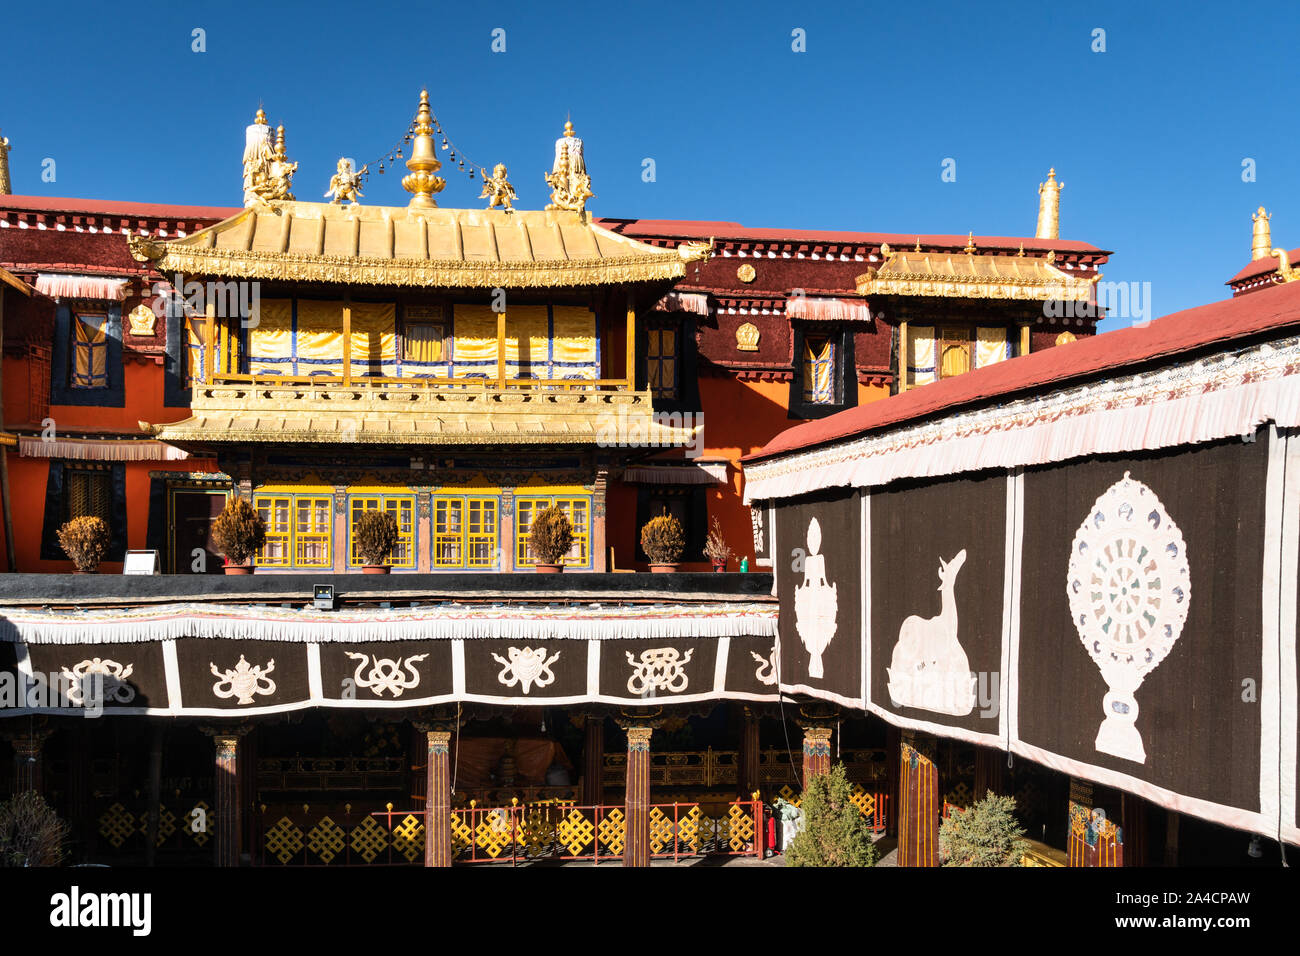 Vue extérieure de la célèbre temple bouddhiste tibétain du Jokhang à Lhassa au Tibet, vieille ville de Chine Banque D'Images